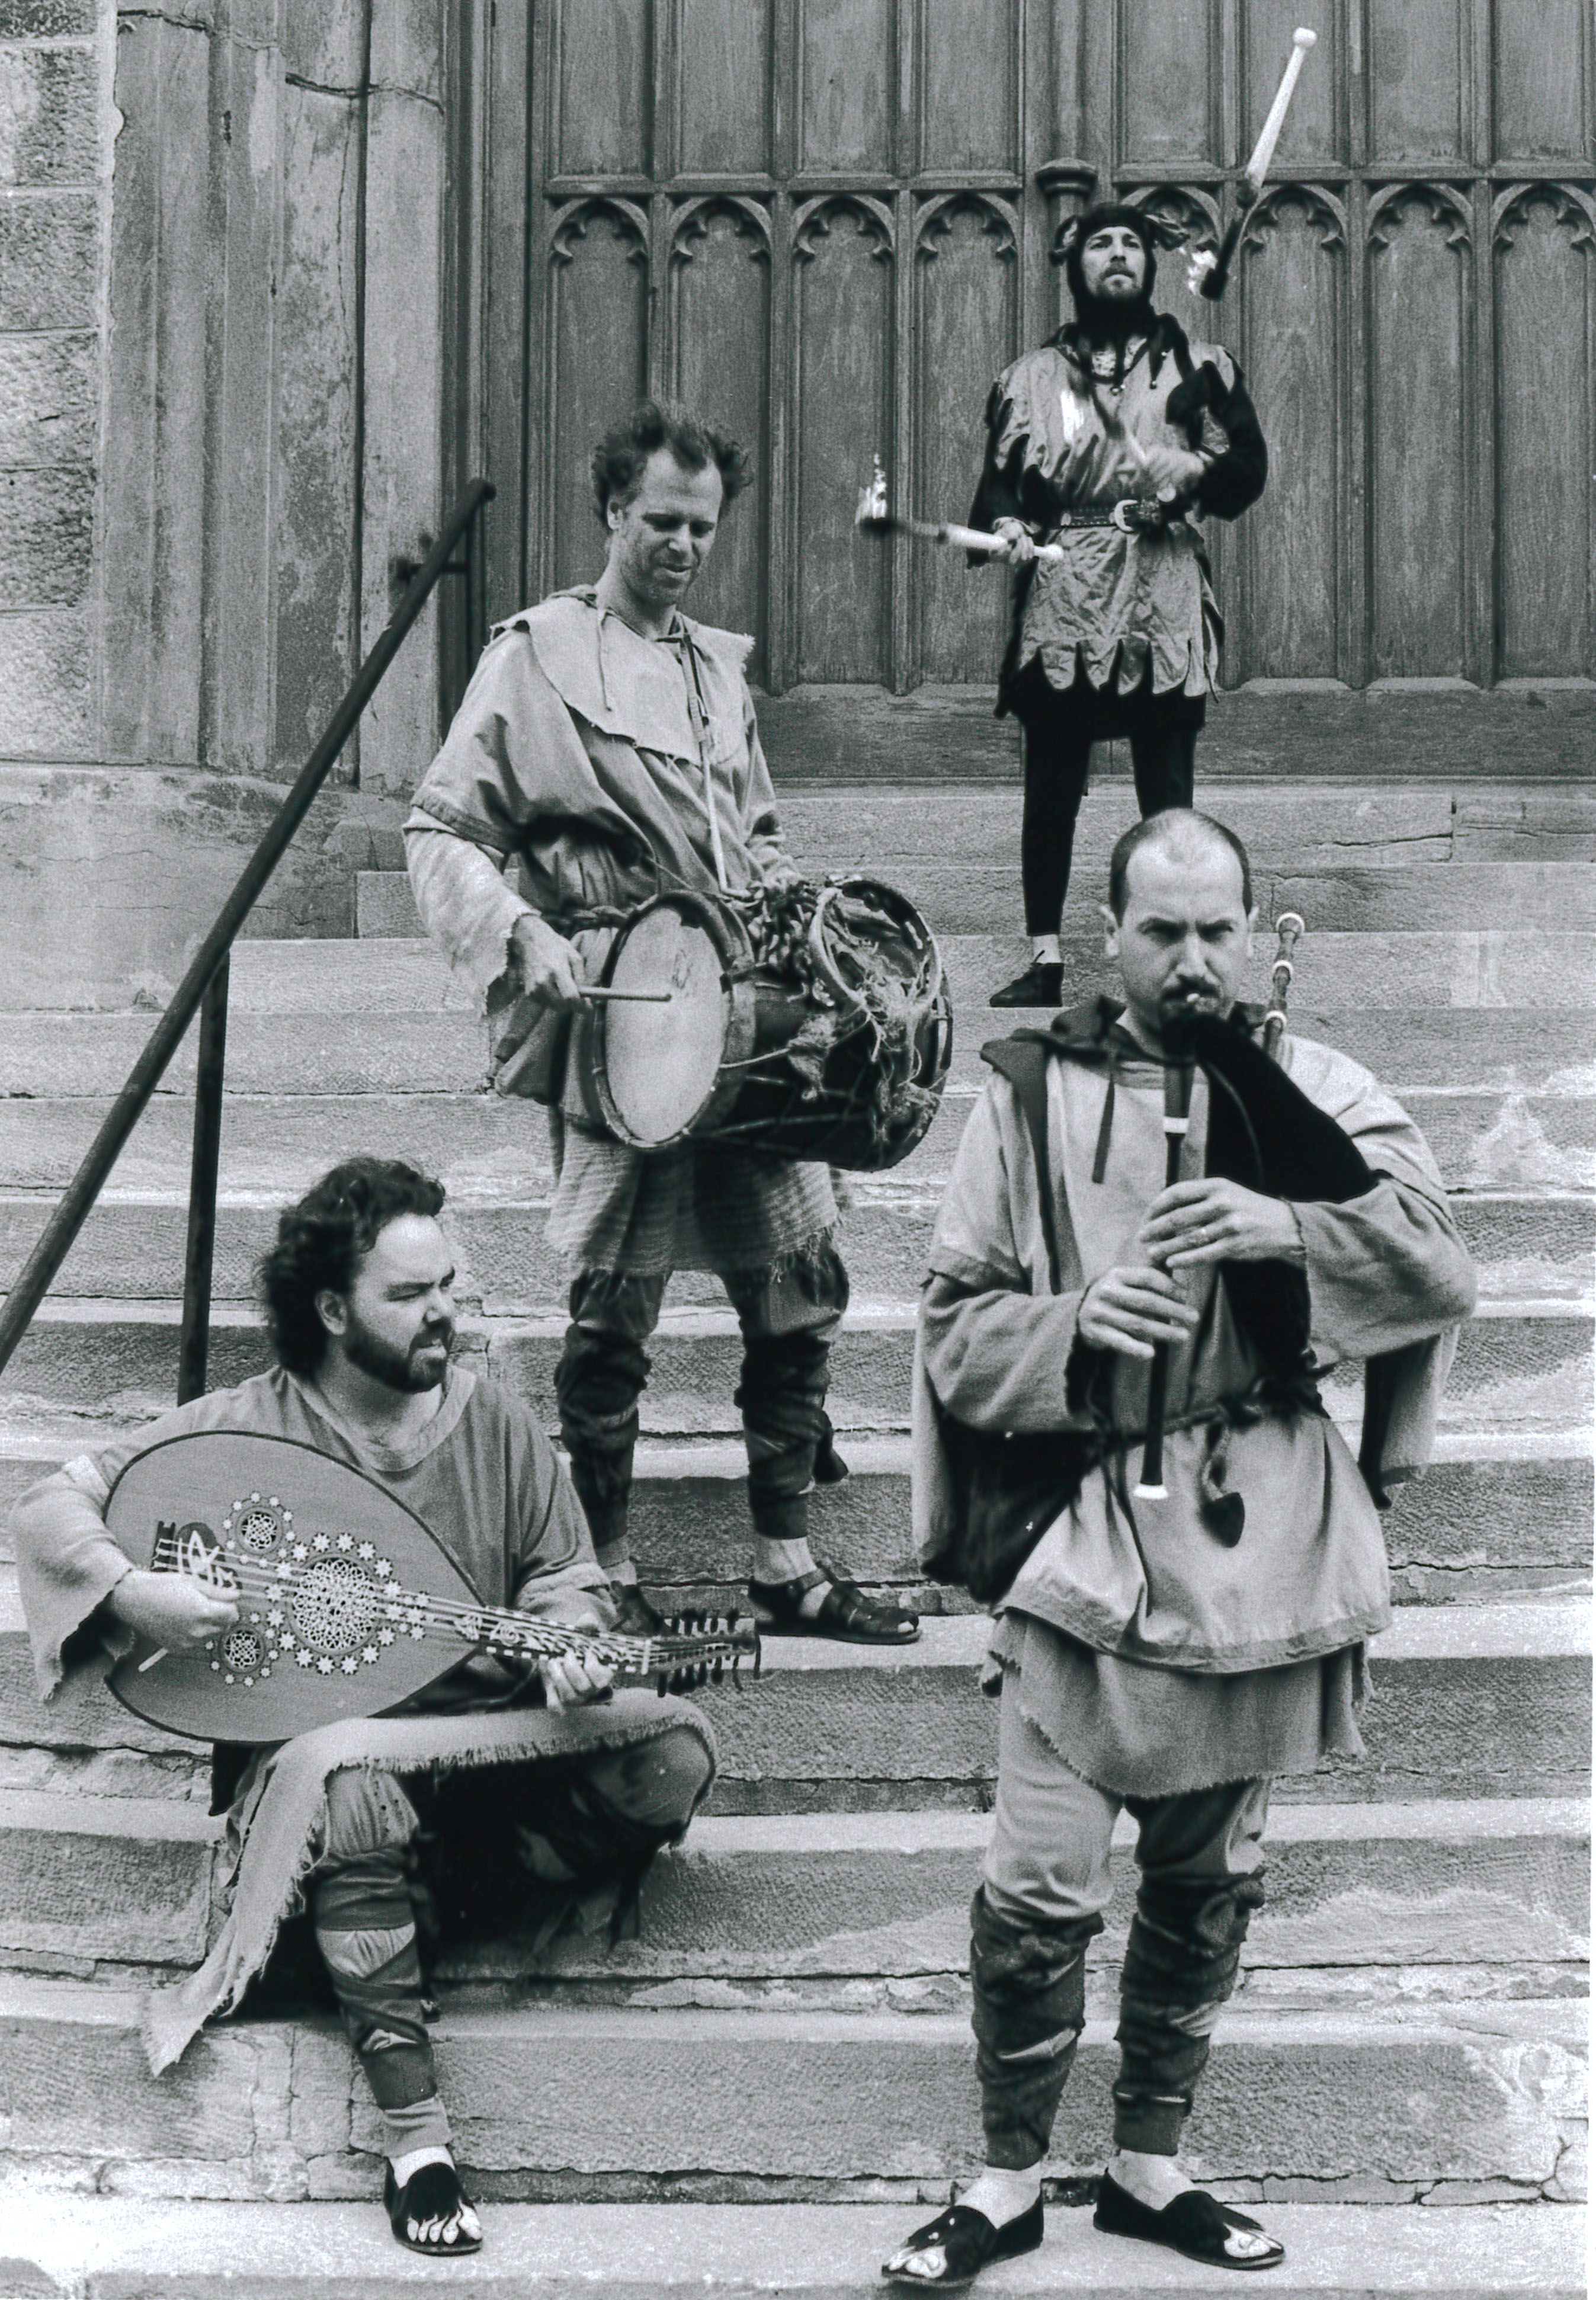 Quatre hommes jouent des instruments de musique sur les escaliers extérieurs en pierre d’un bâtiment.